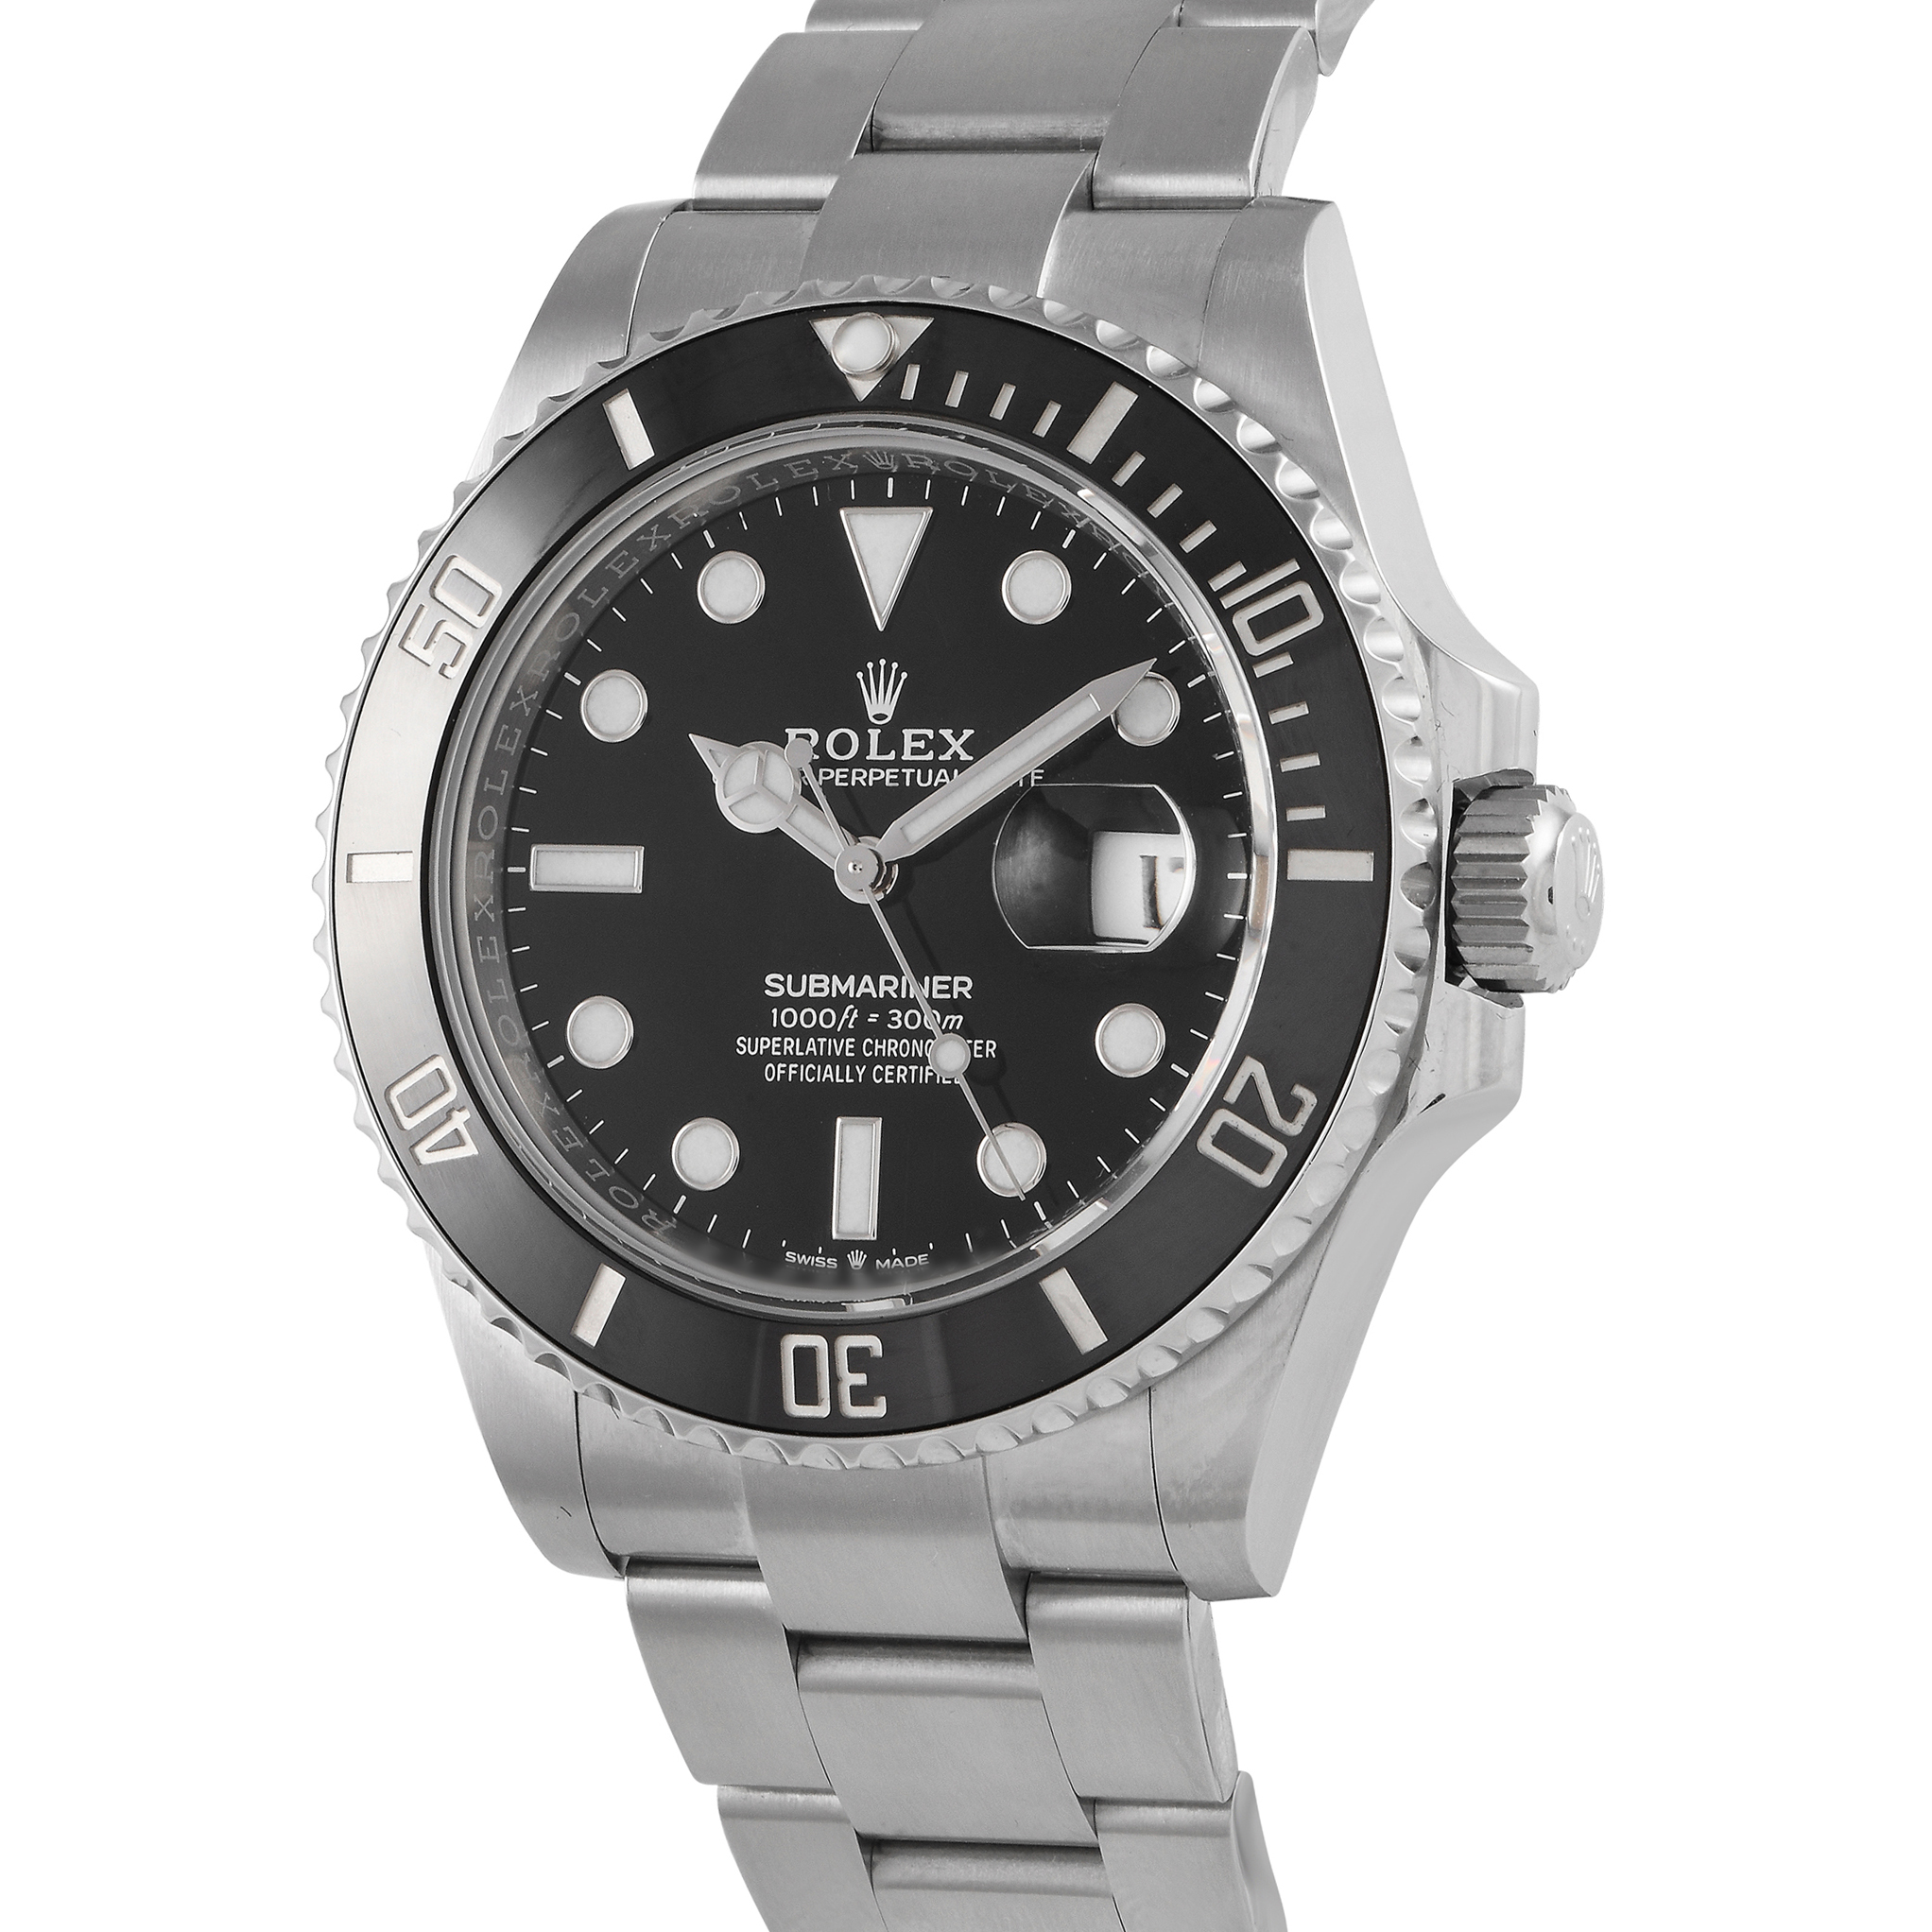 Rolex Submariner Date Watch 126610LN